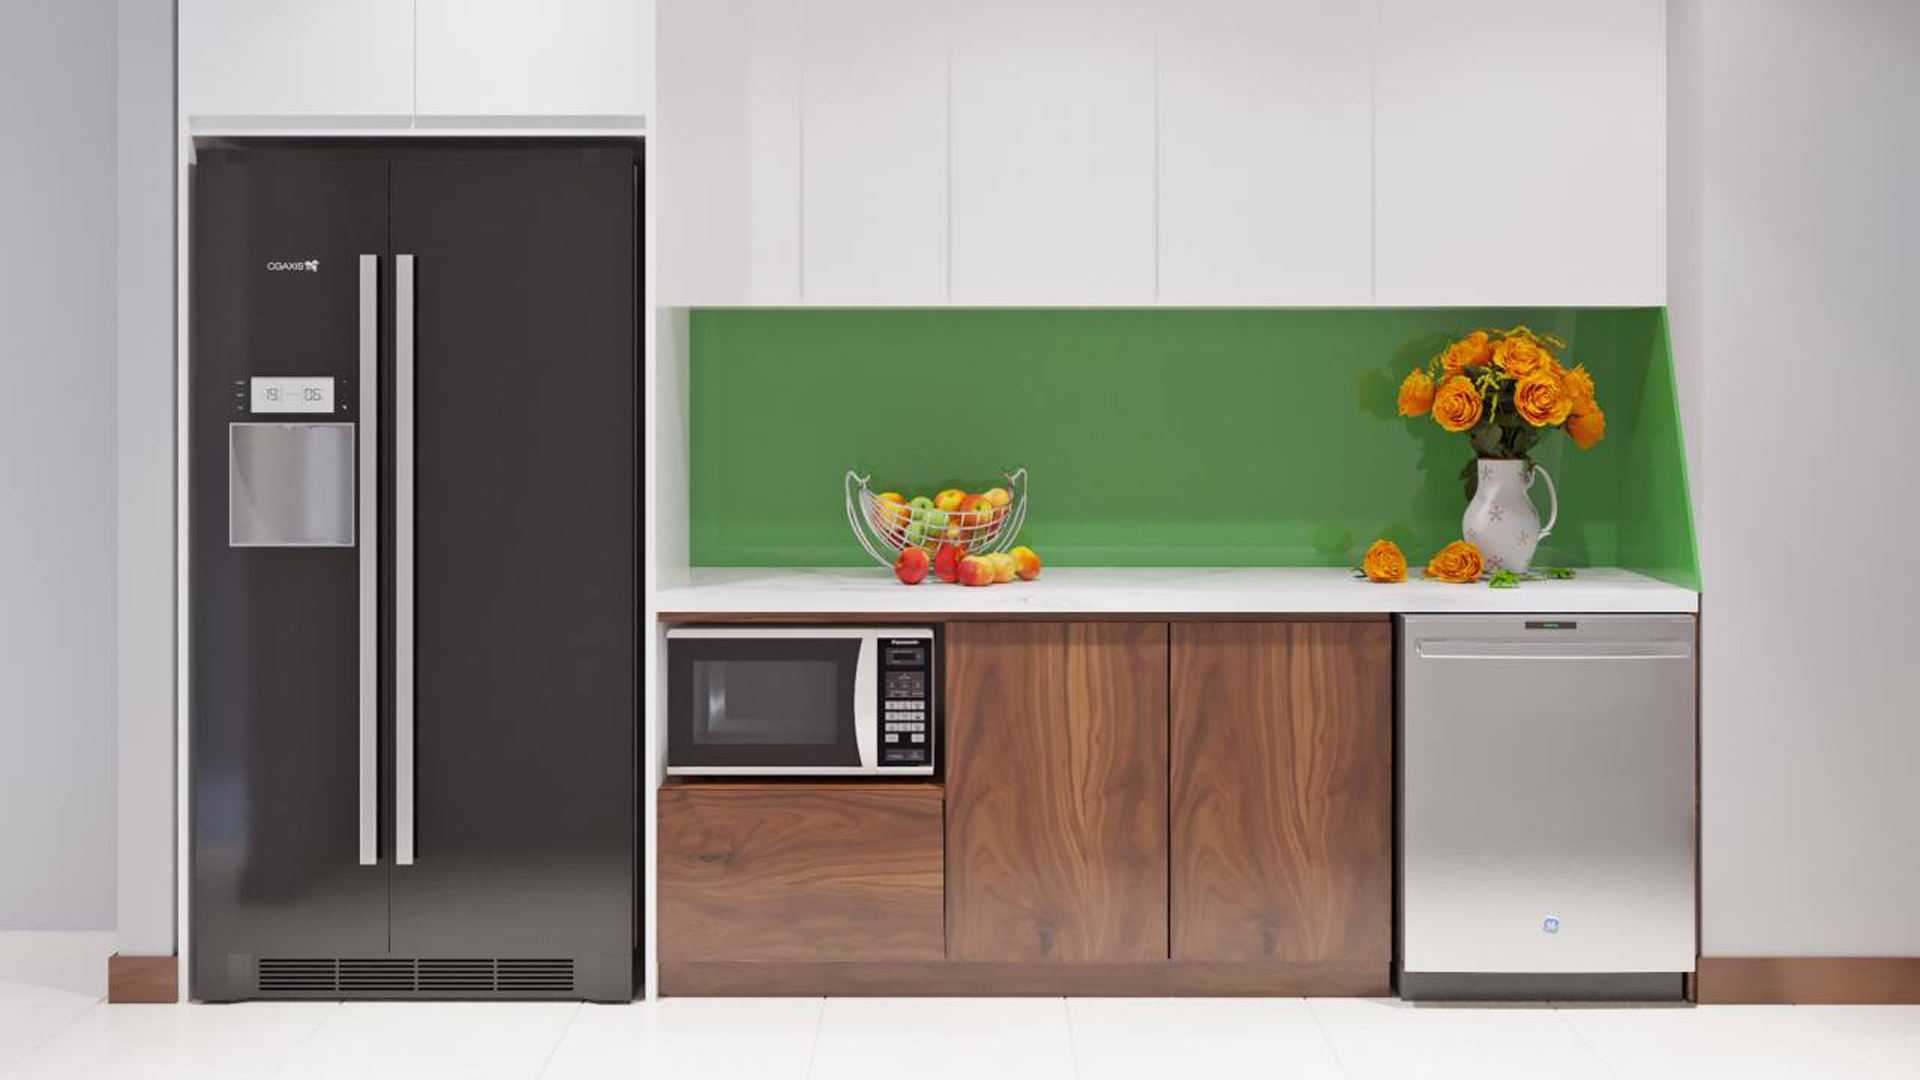 Thiết kế không gian nội thất cho mẫu phòng bếp nhỏ hiện đại